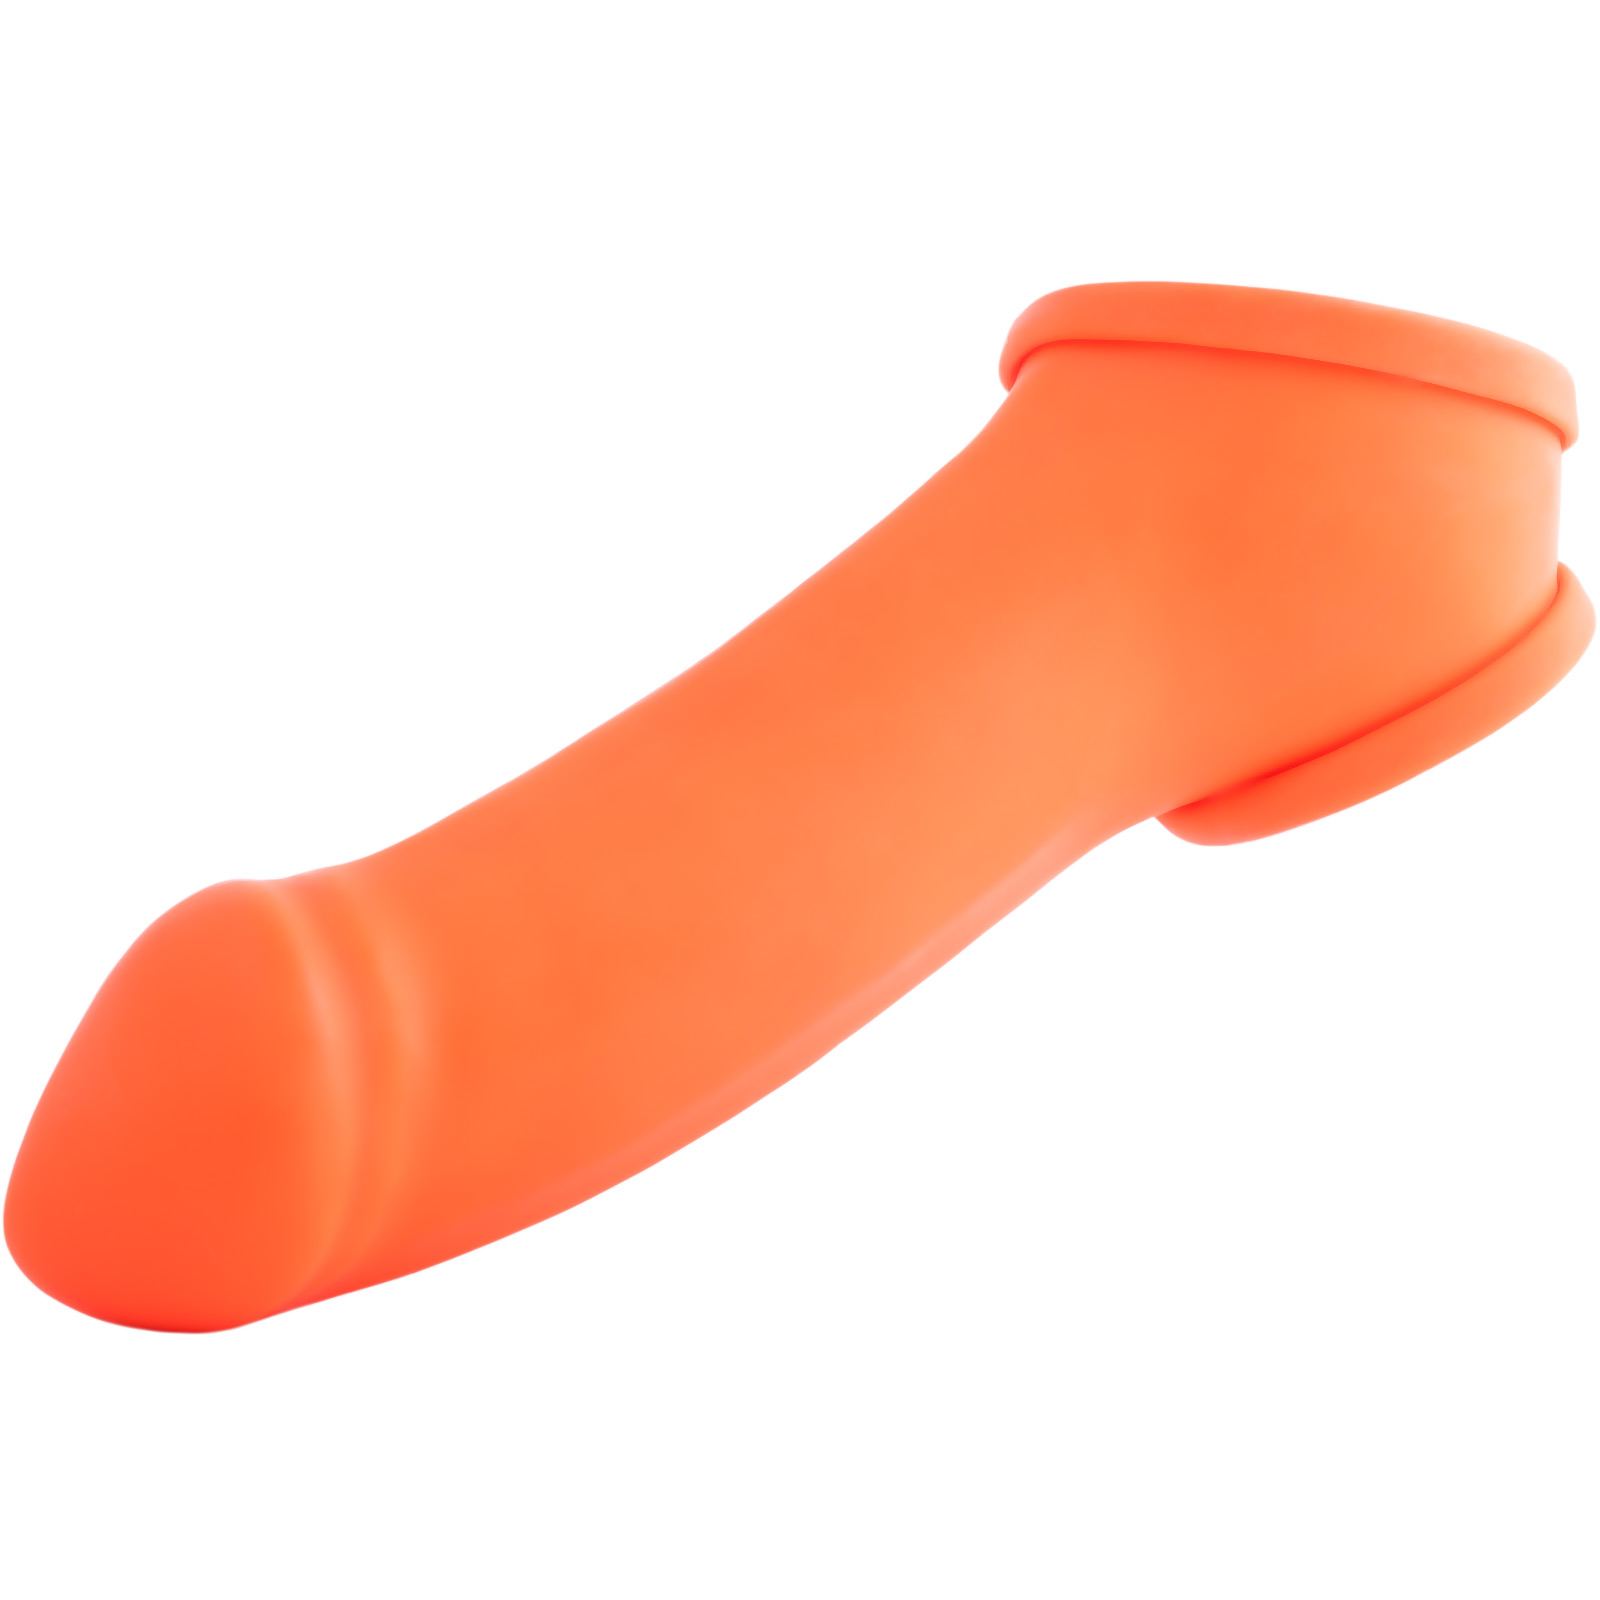 Toylie Latex-Penishülle «ERIK» neon-orange, mit ausgeformter Eichel und Hodenring